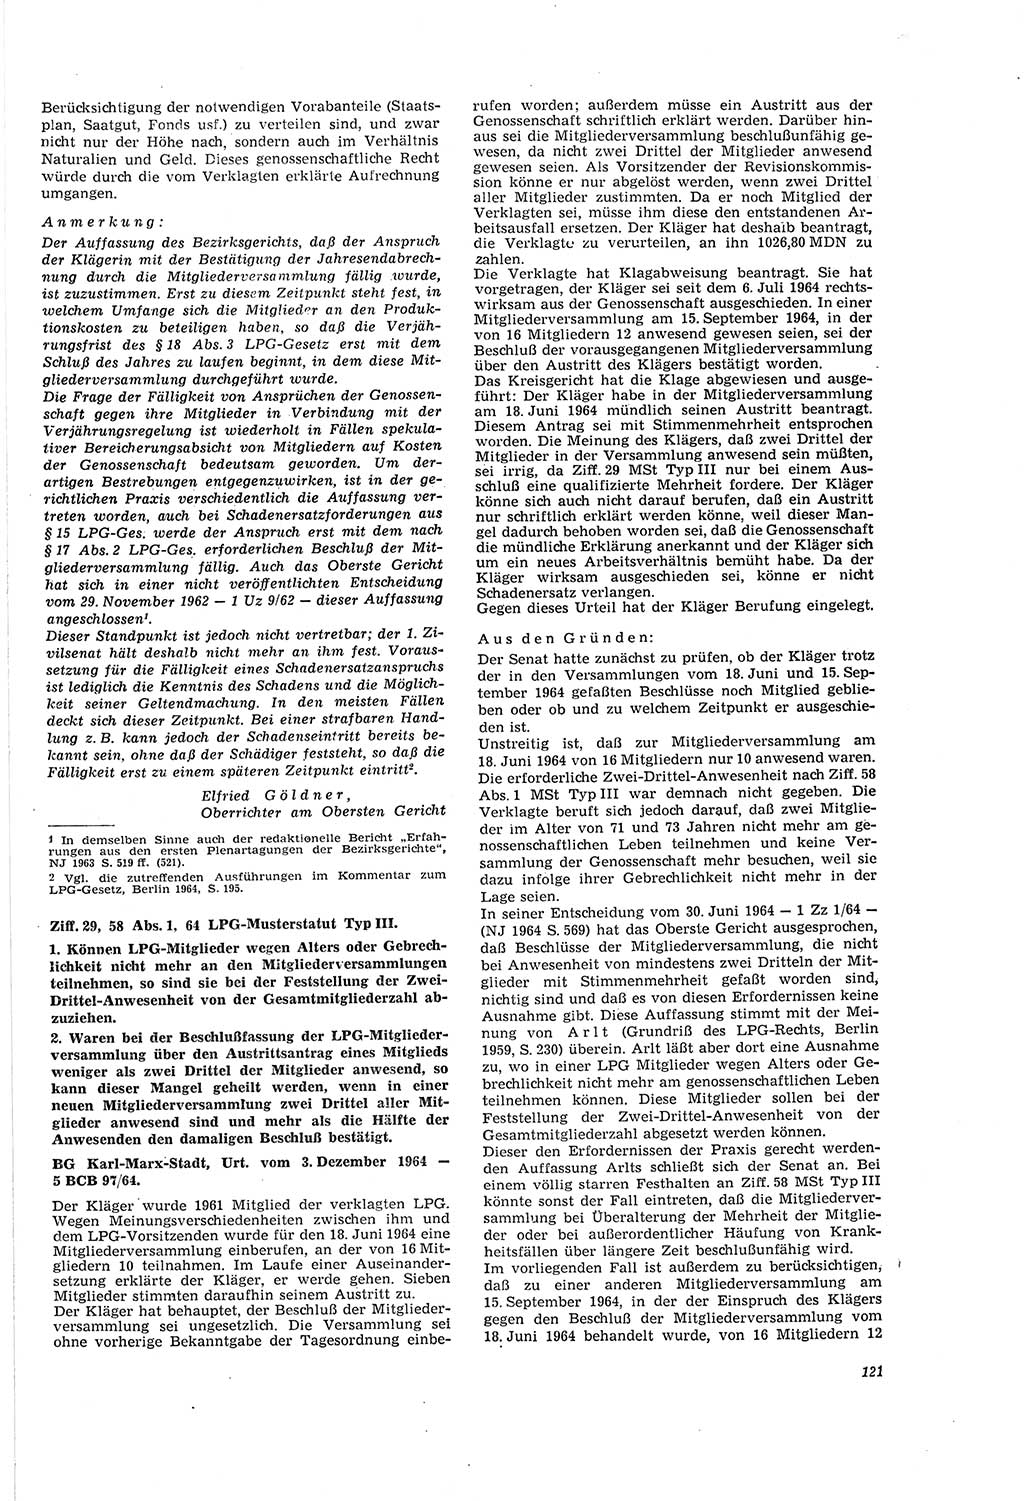 Neue Justiz (NJ), Zeitschrift für Recht und Rechtswissenschaft [Deutsche Demokratische Republik (DDR)], 20. Jahrgang 1966, Seite 121 (NJ DDR 1966, S. 121)